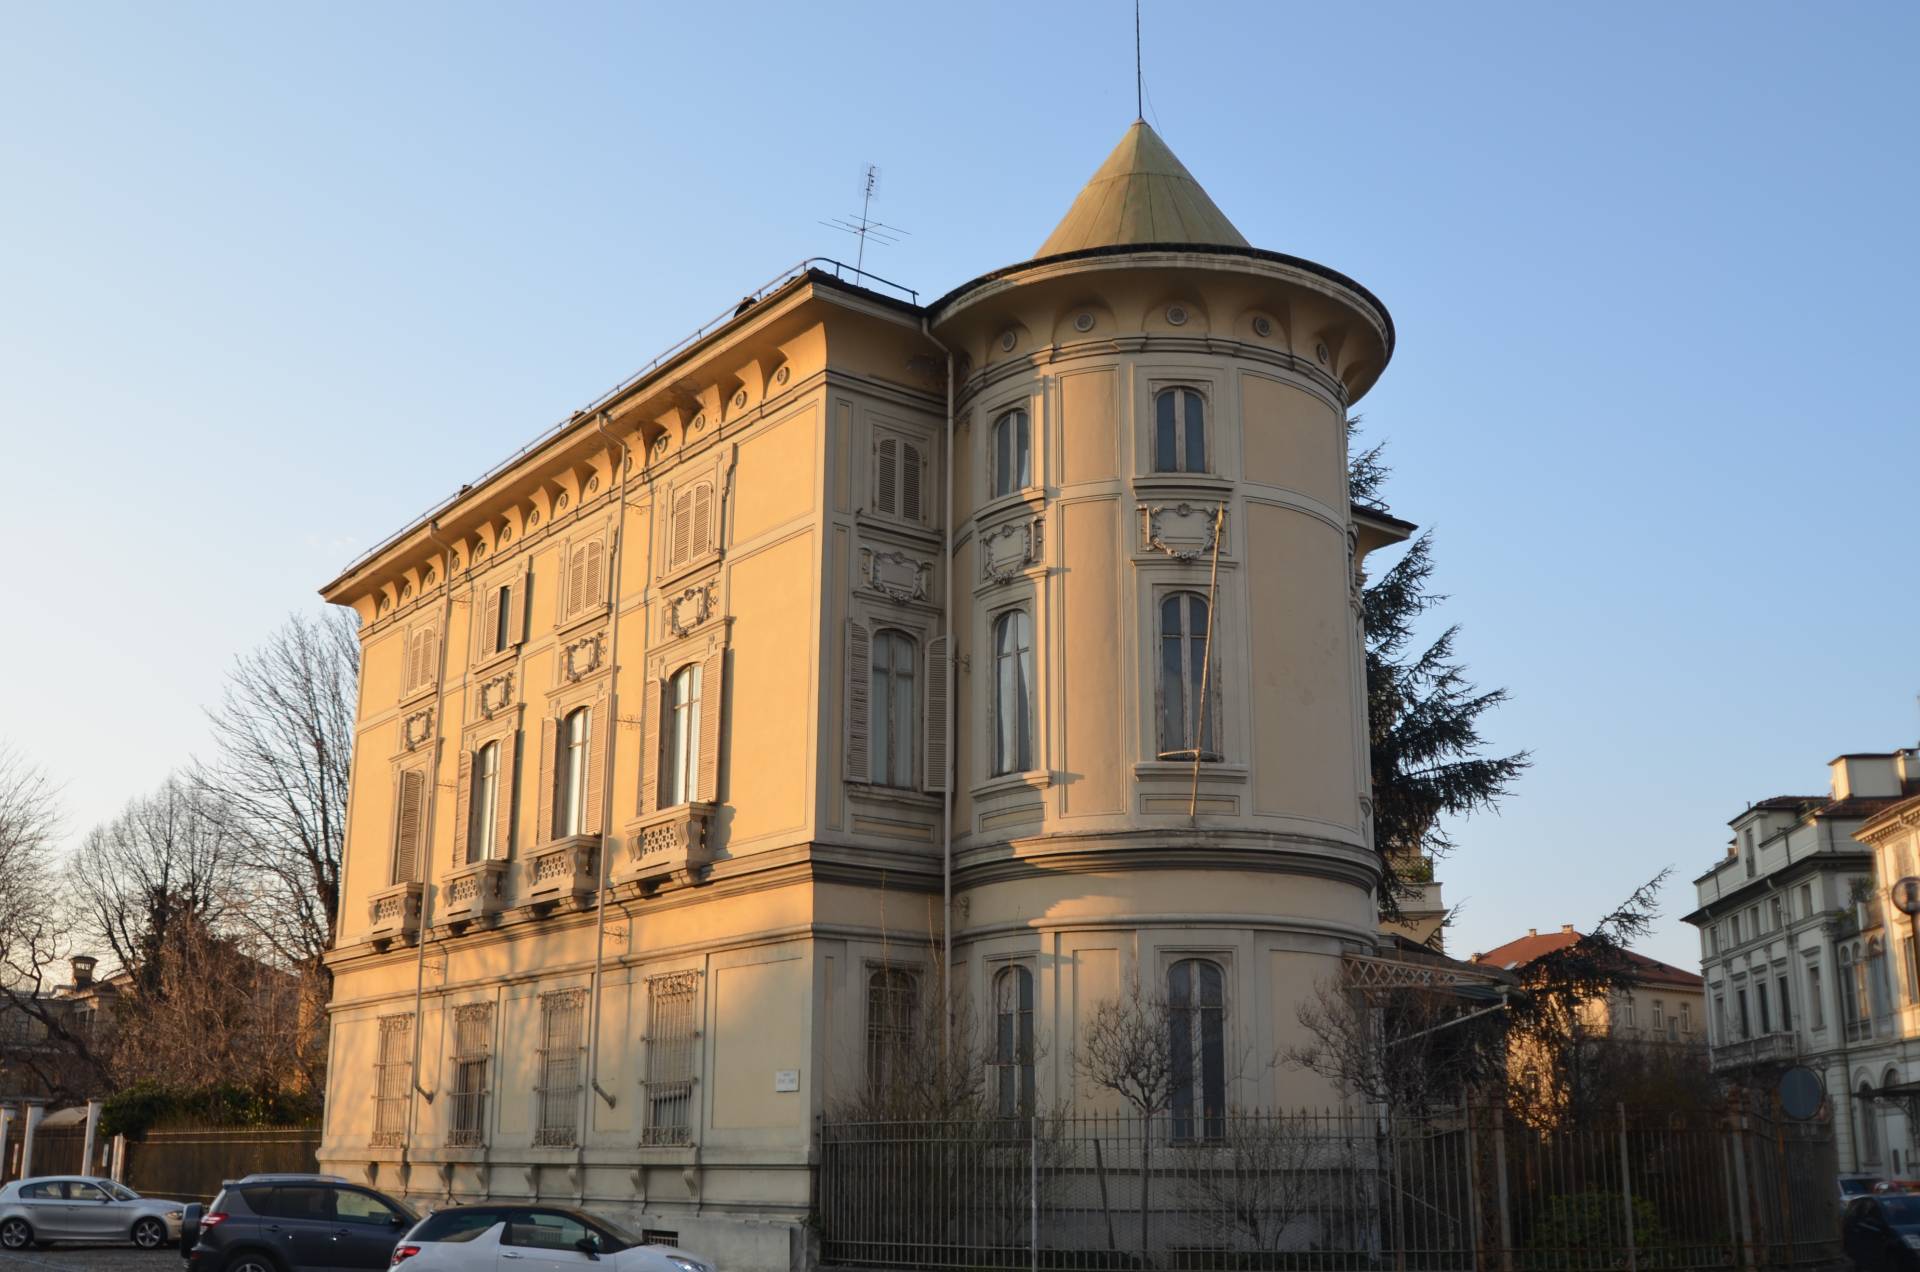 Stabile - Palazzo - Crocetta